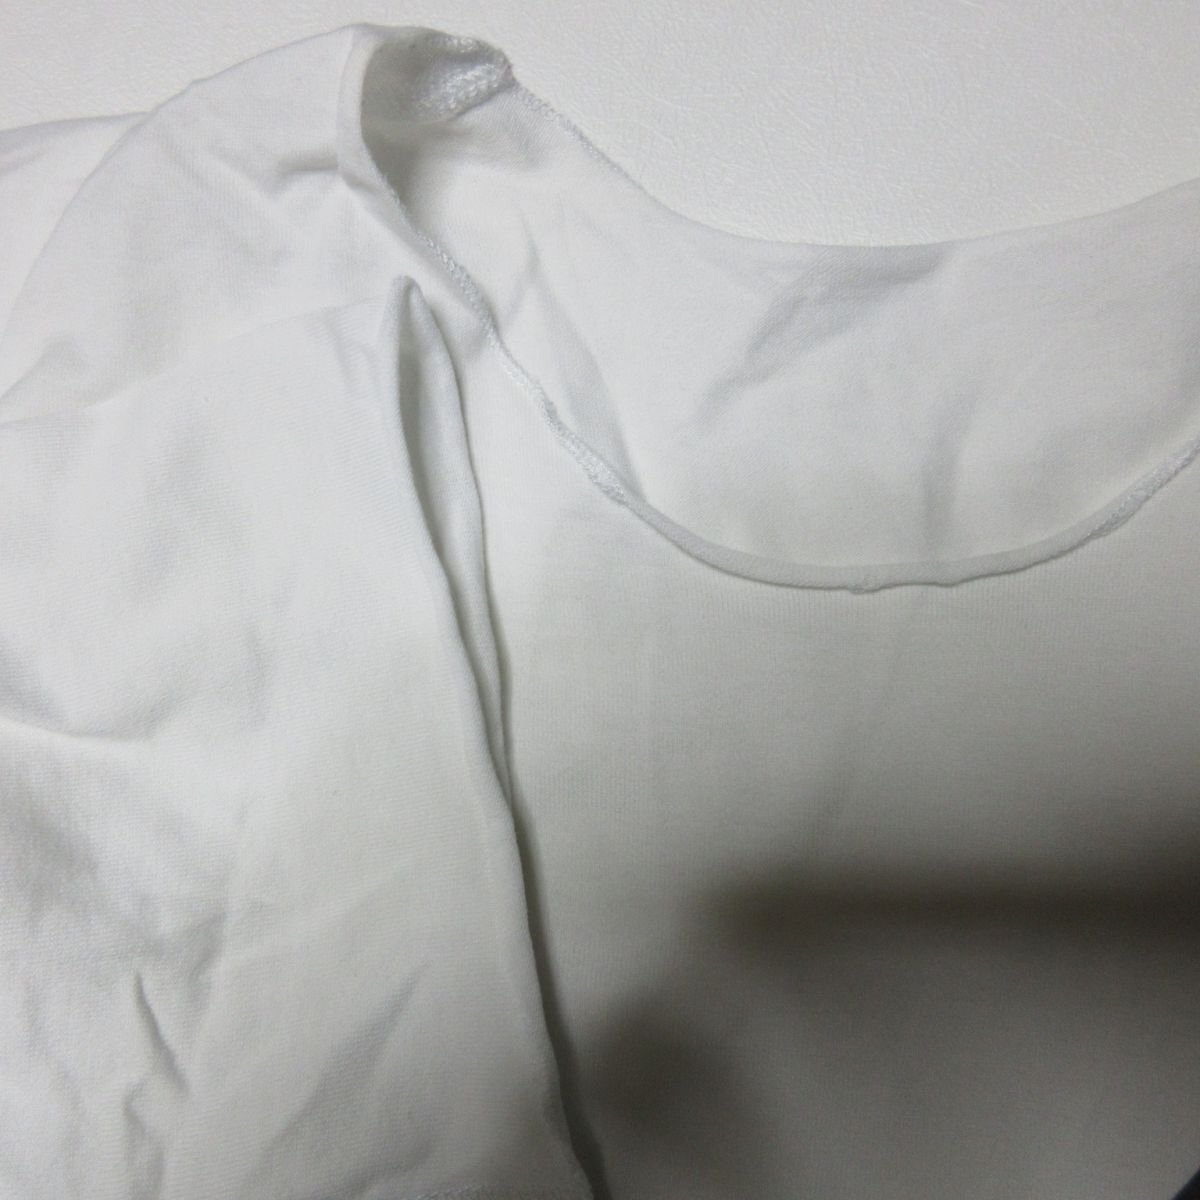 美品 lucien pellat-finet ルシアンペラフィネ スカルプリント クルーネック 半袖 Tシャツ カットソー S ホワイト ◆_画像3